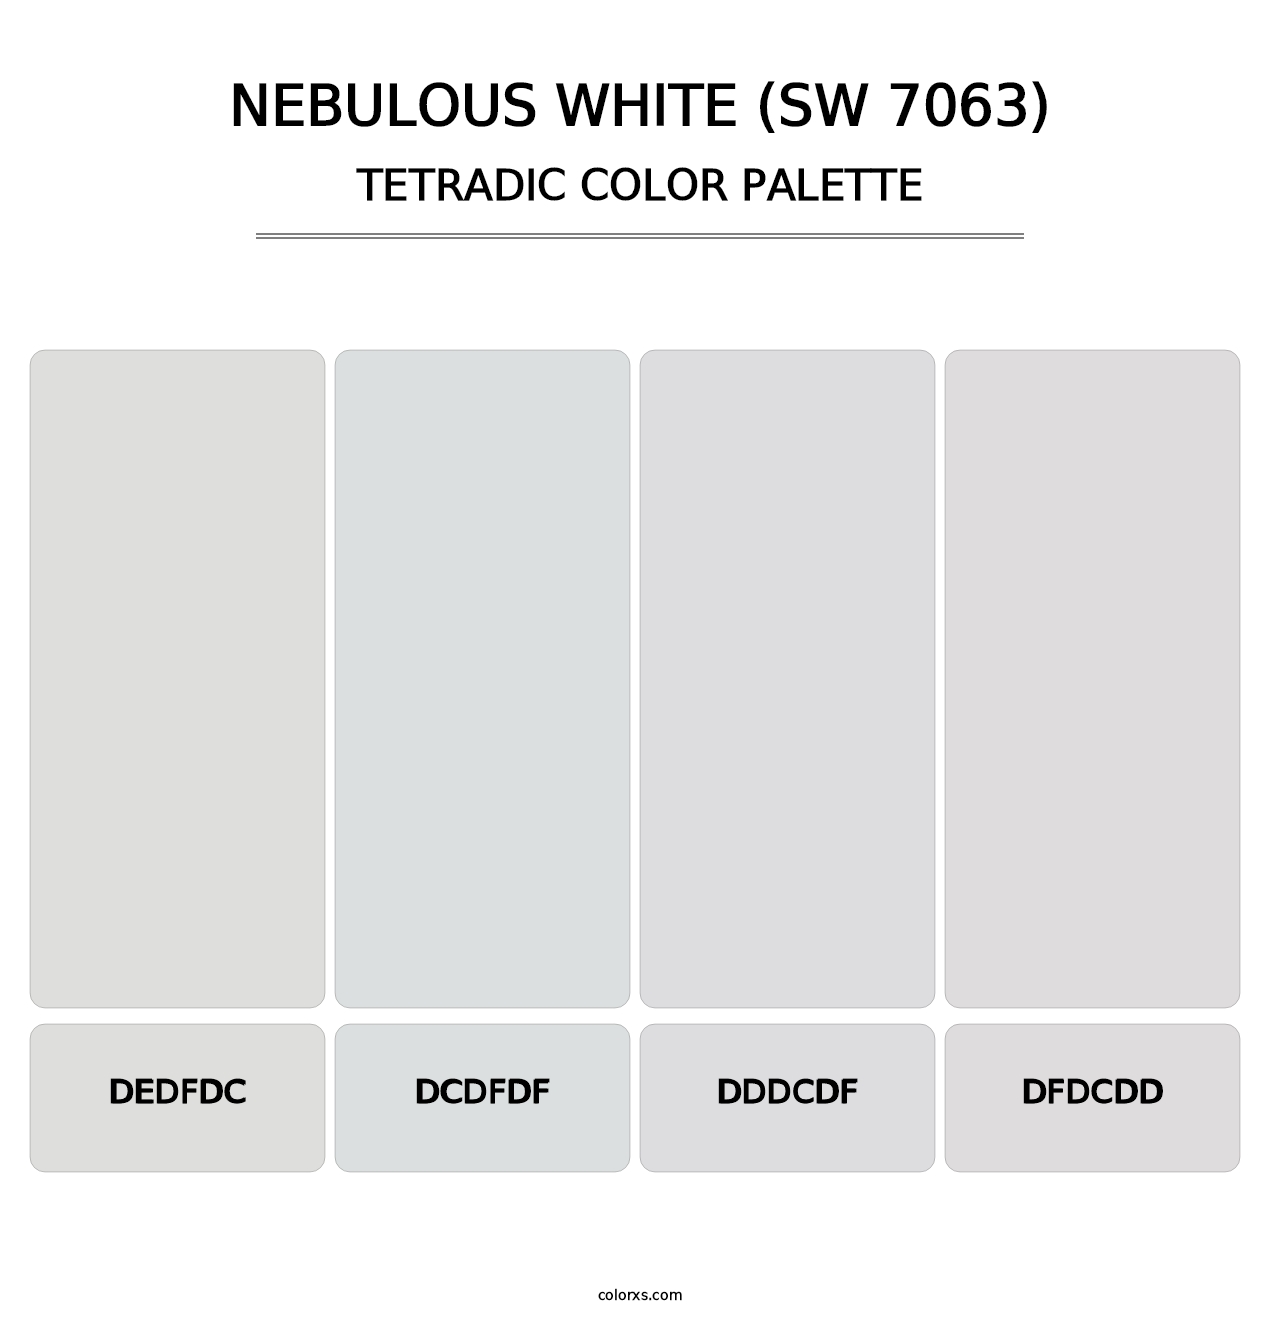 Nebulous White (SW 7063) - Tetradic Color Palette